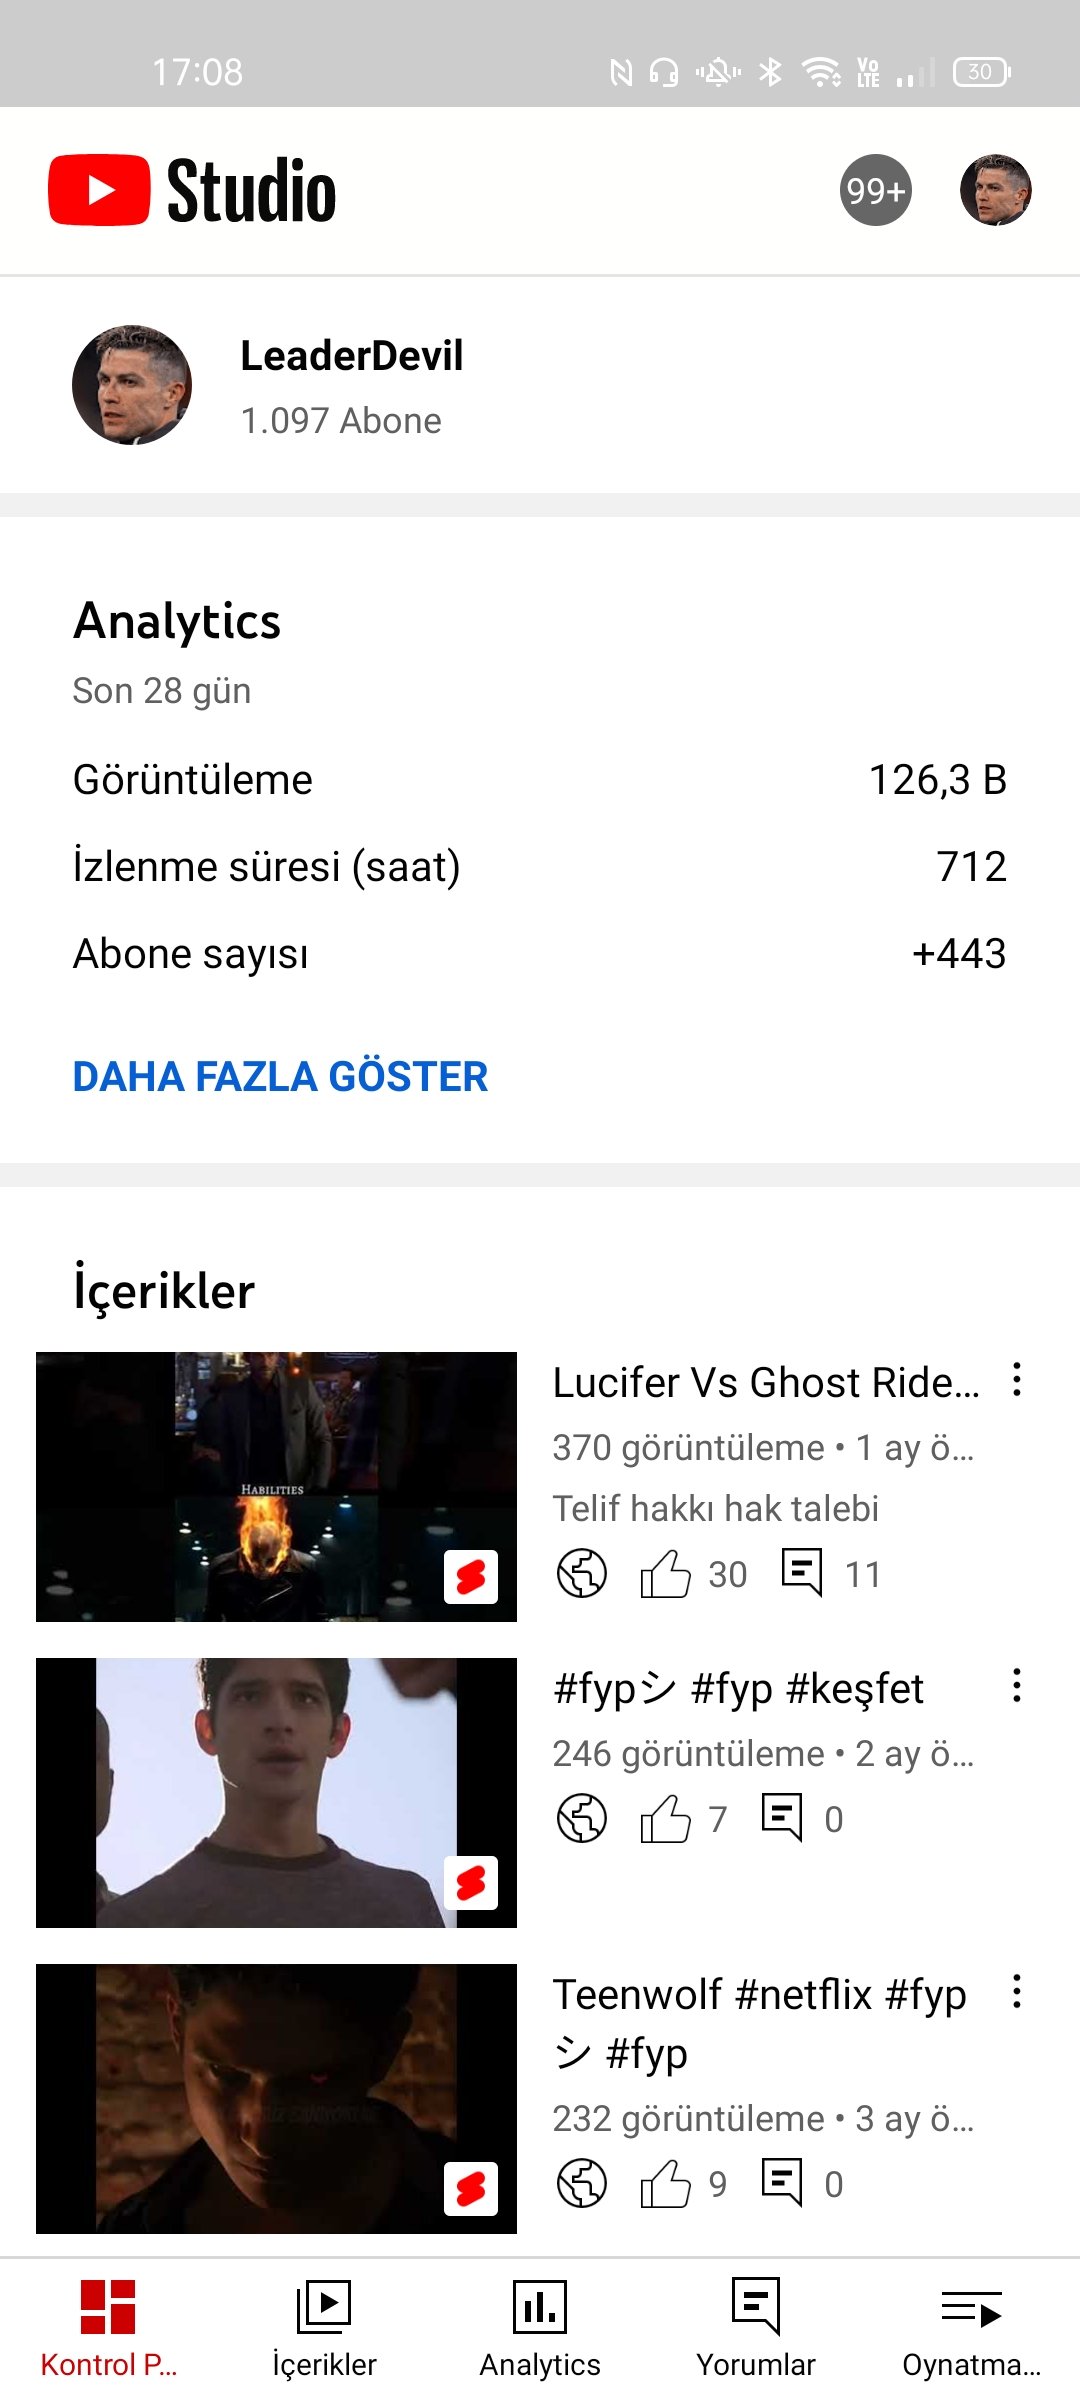 Youtube 1k 